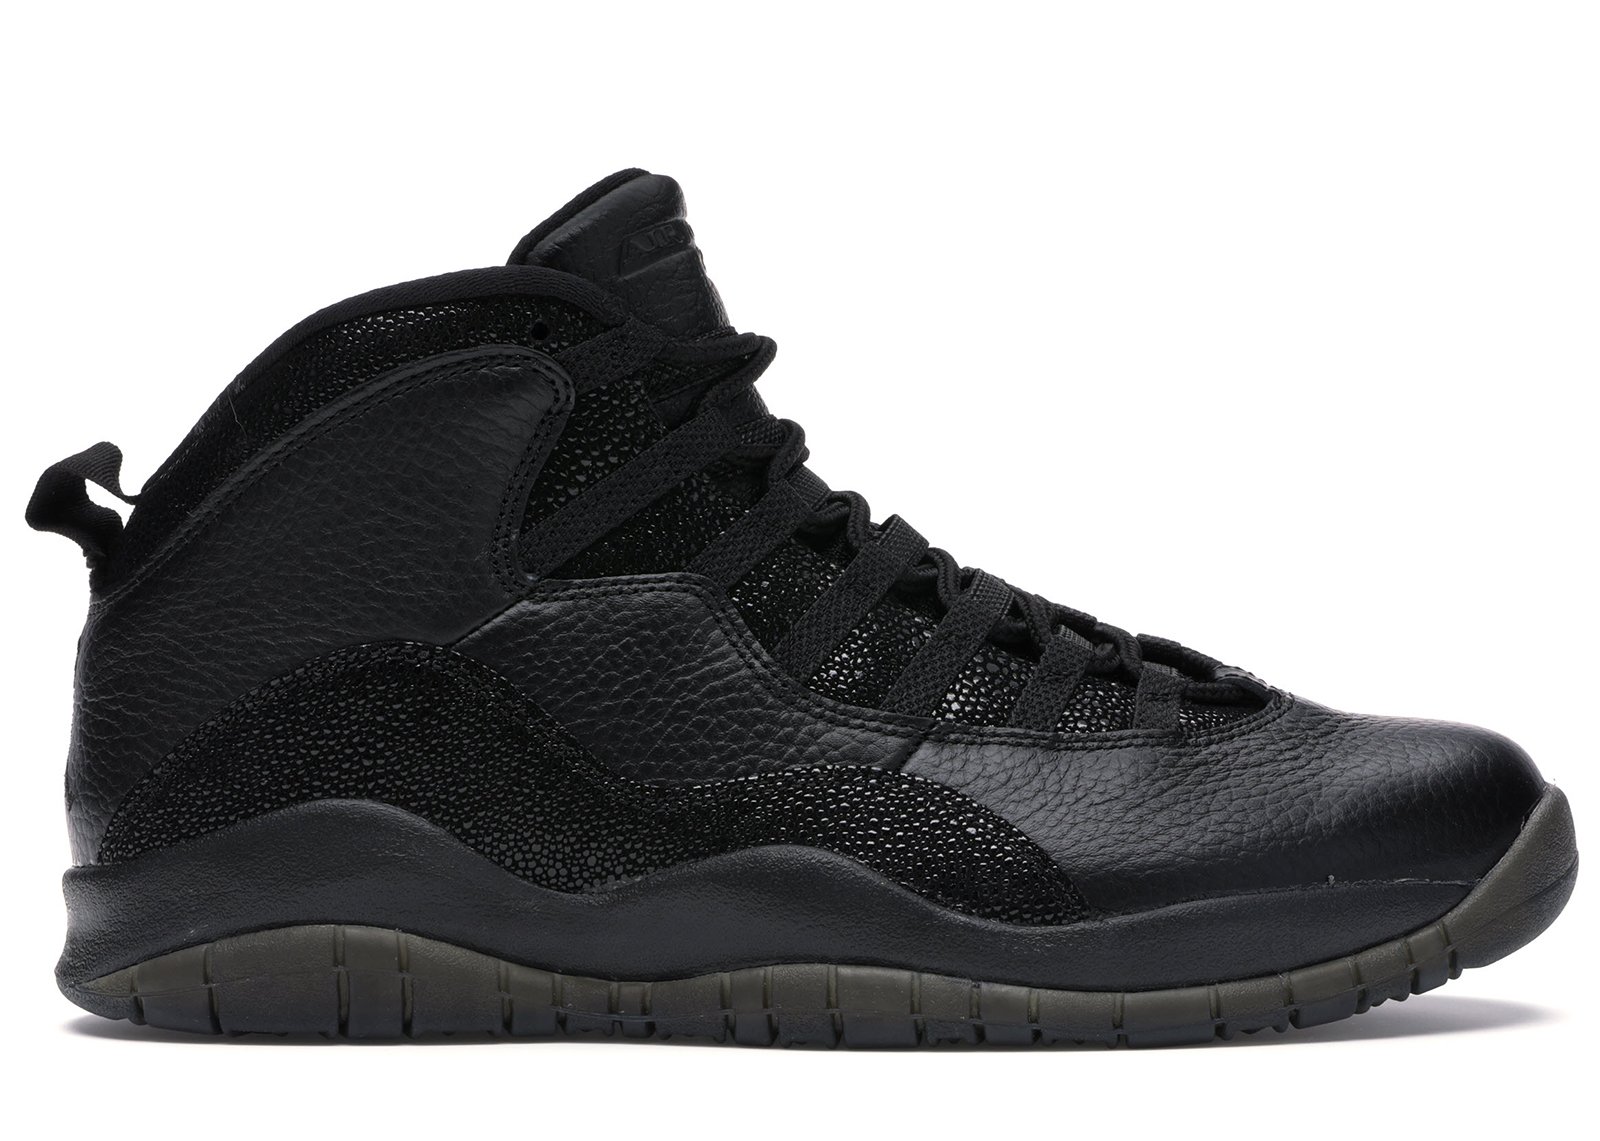 sneakers Jordan 10 Retro Drake OVO Black